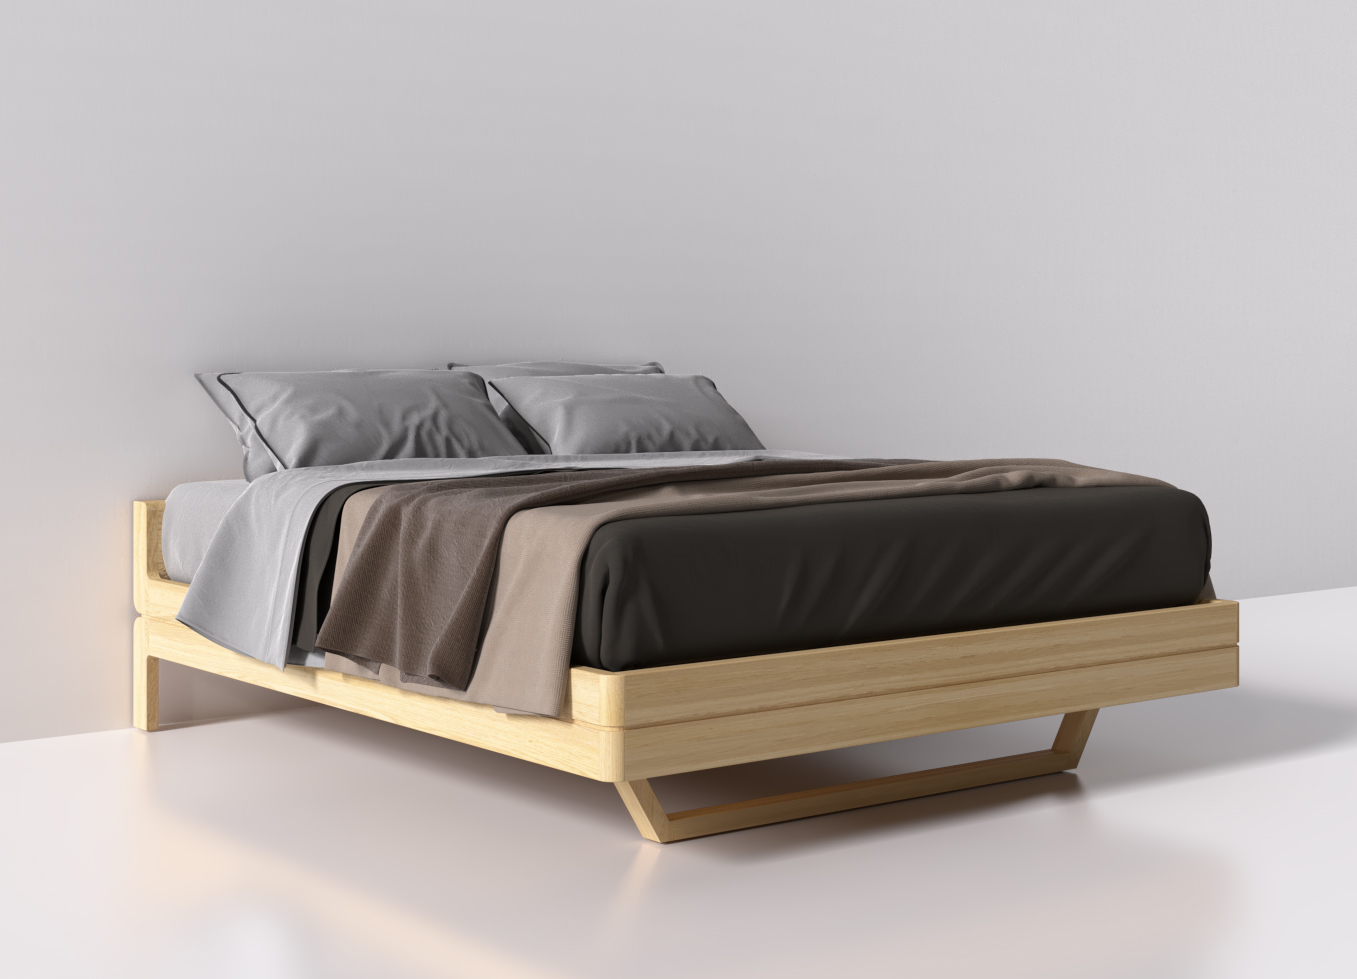 Giường ngủ bằng gỗ đẹp - điểm nhấn cho căn phòng của bạn